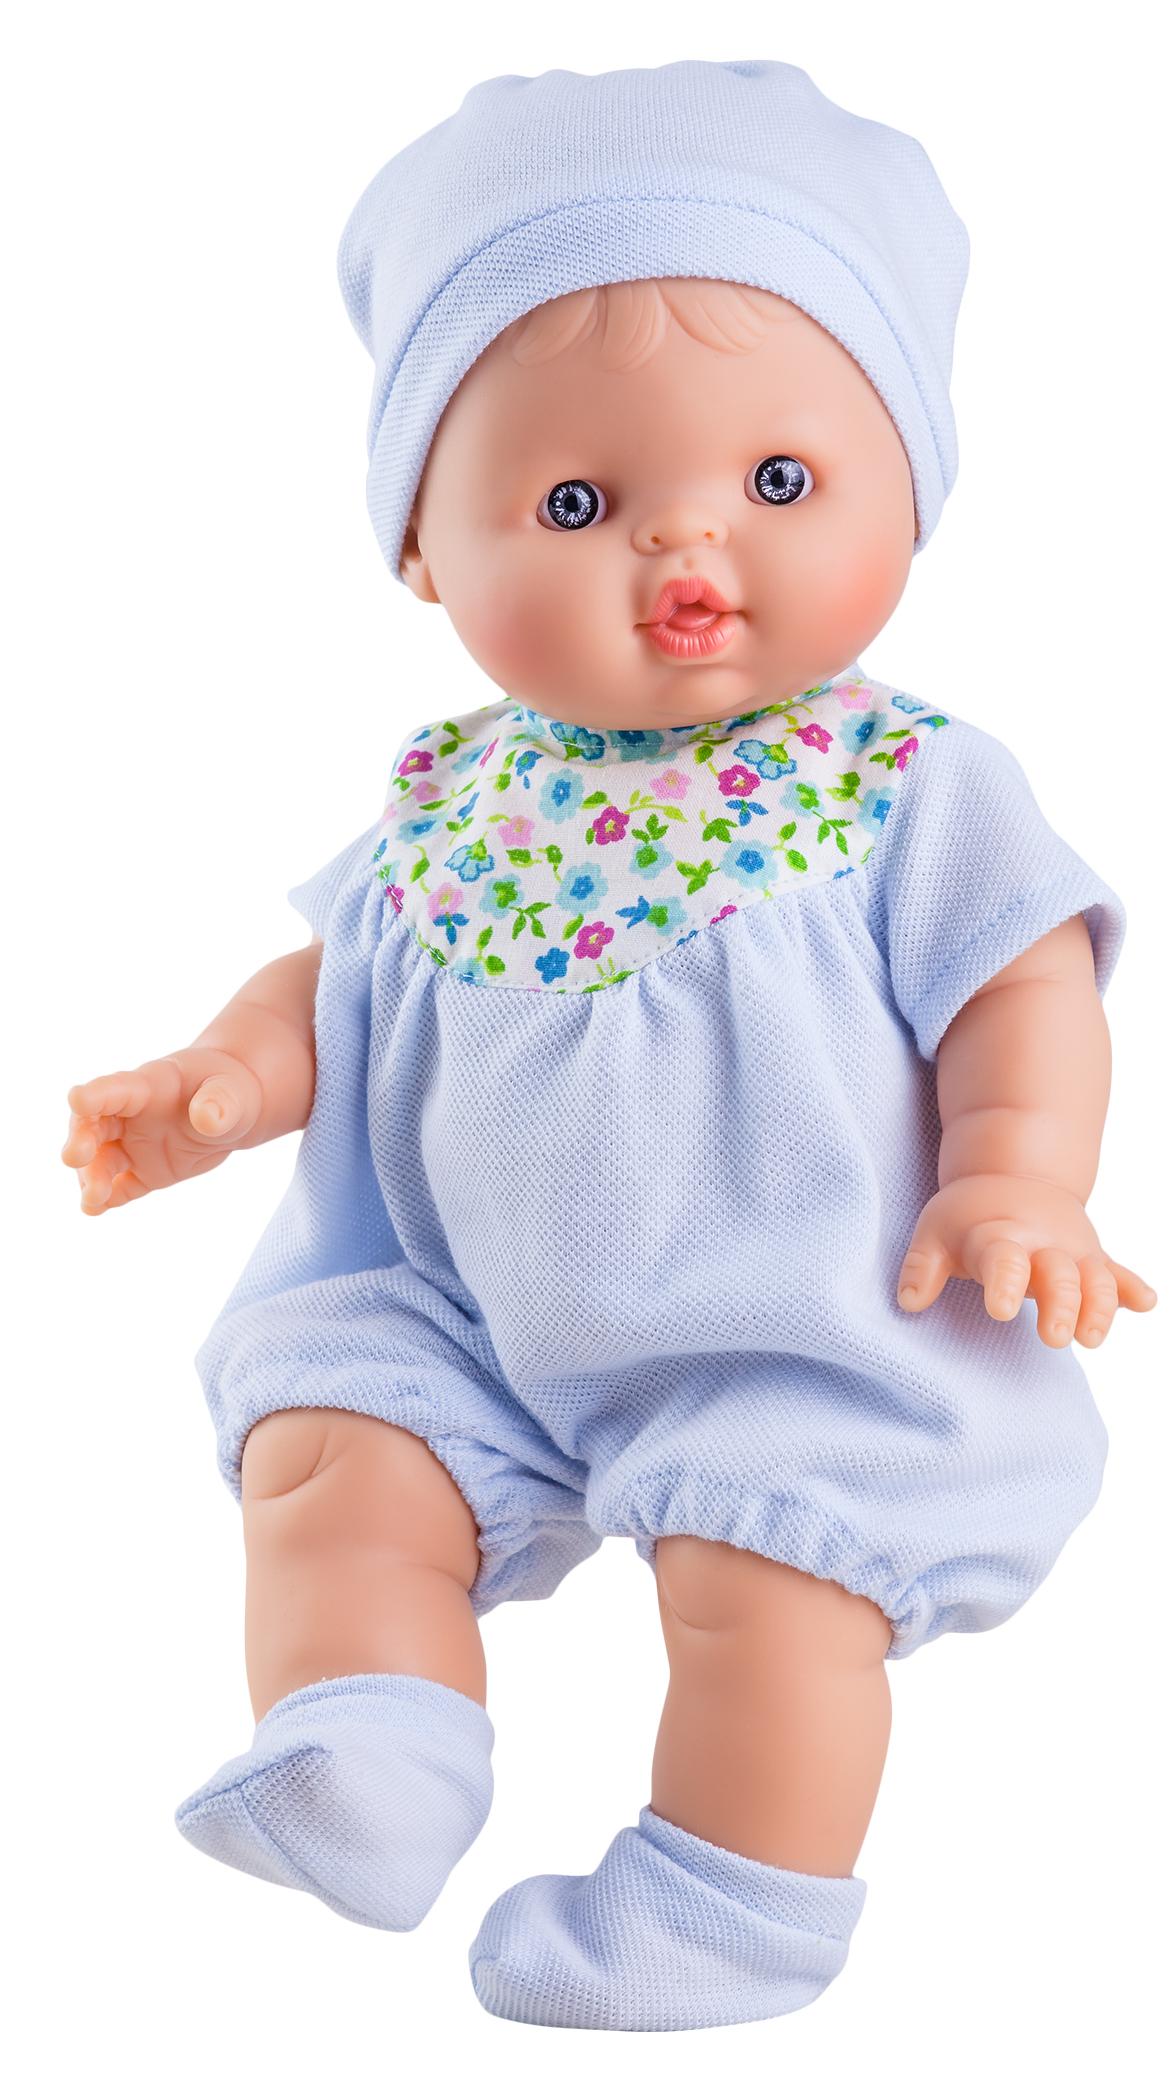 Realistická panenka chlapeček Albert od firmy Paola Reina ze Španělska